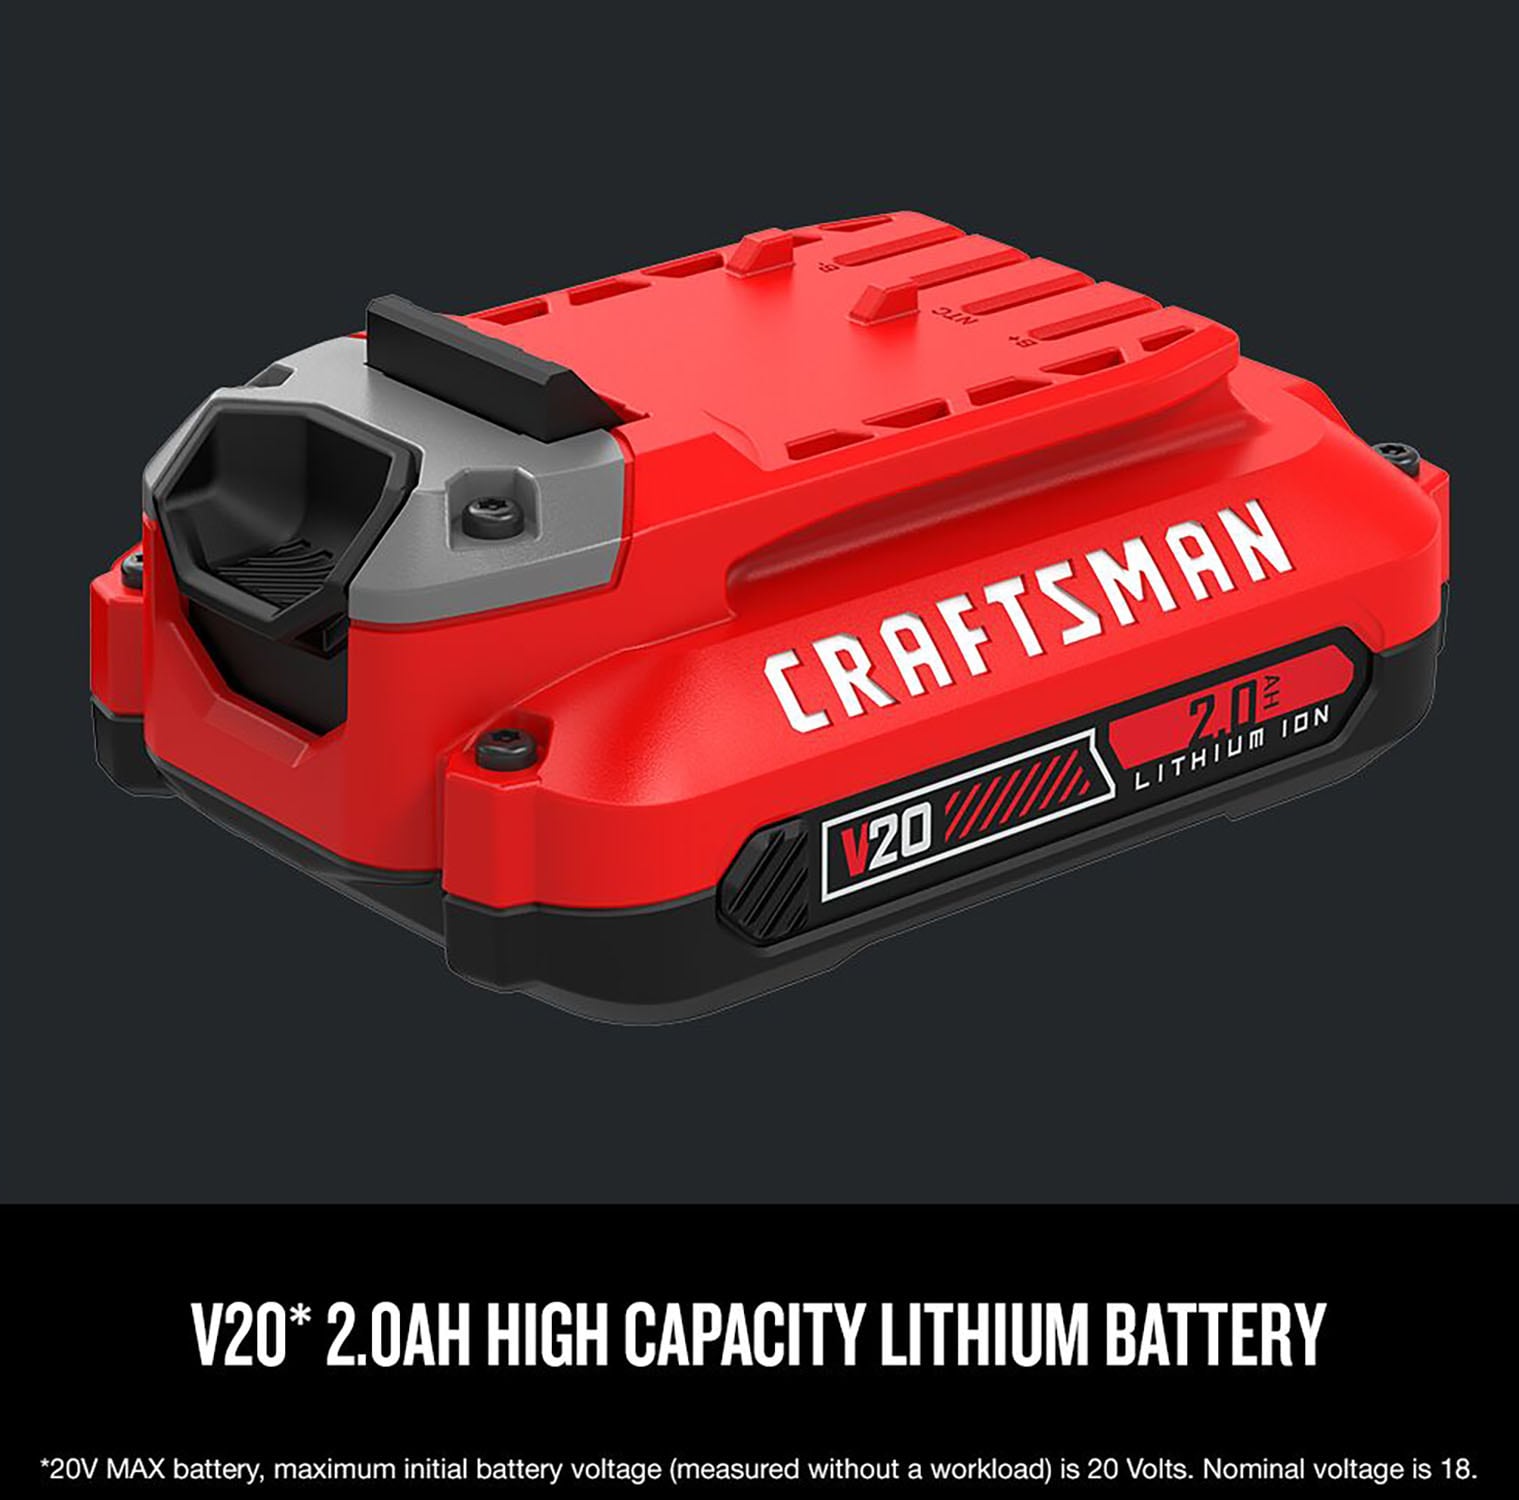 20V Light for Craftsman V20 Li-ion Battery, 40W 4200LM for Craftsman Light  with 5V/2.1A USB Port,18W Type C Port 110° Pivoting Head Led Work Light